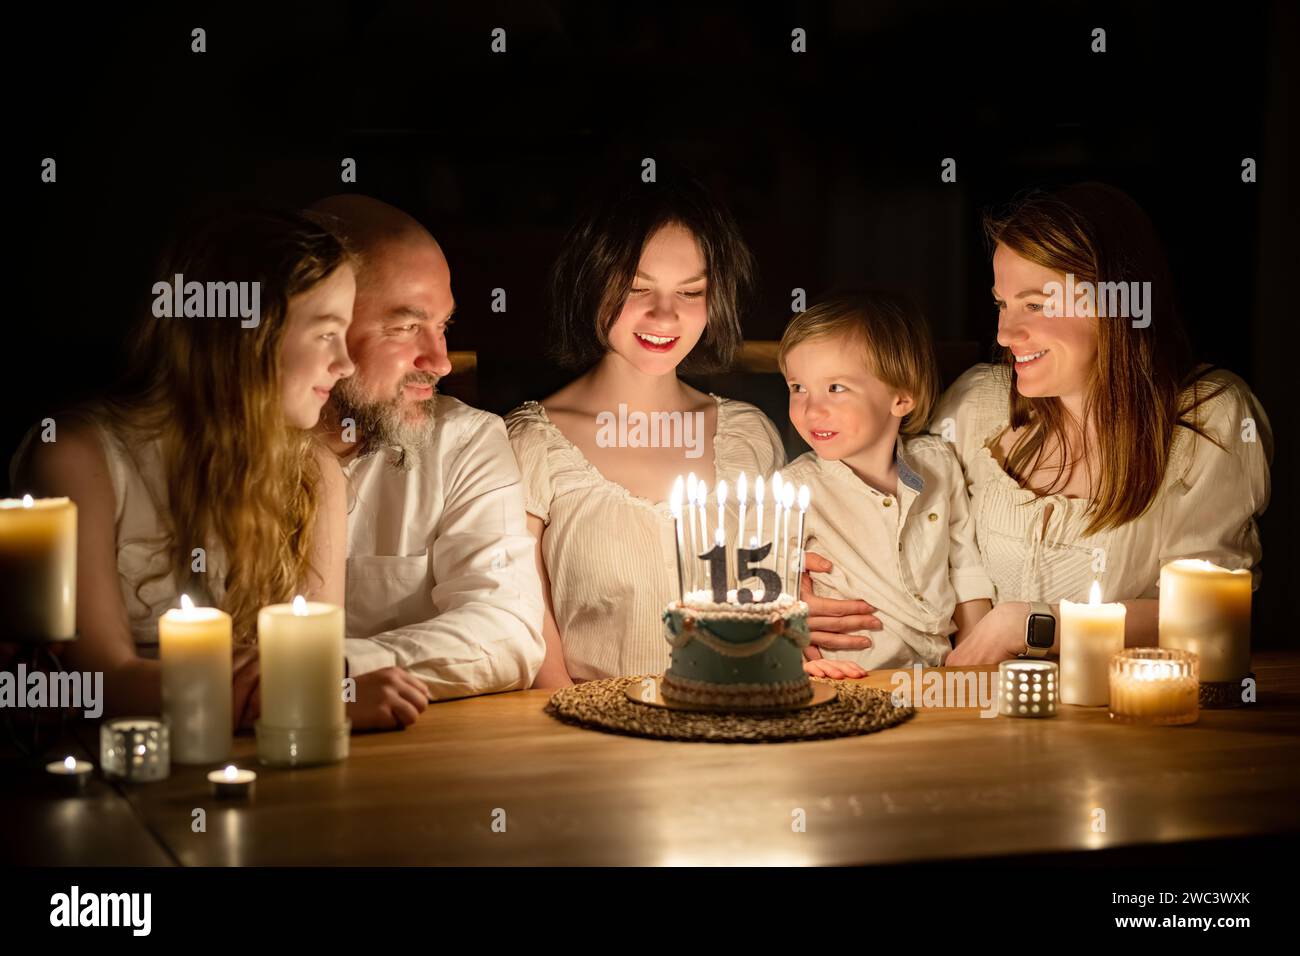 Niedliches 15-jähriges Mädchen, das sich wünscht, bevor es Kerzen auf ihre Geburtstagskuche bläst. Fünfköpfige Familie feiert Kindergeburtstag. Geburtstags-Traditionen Stockfoto